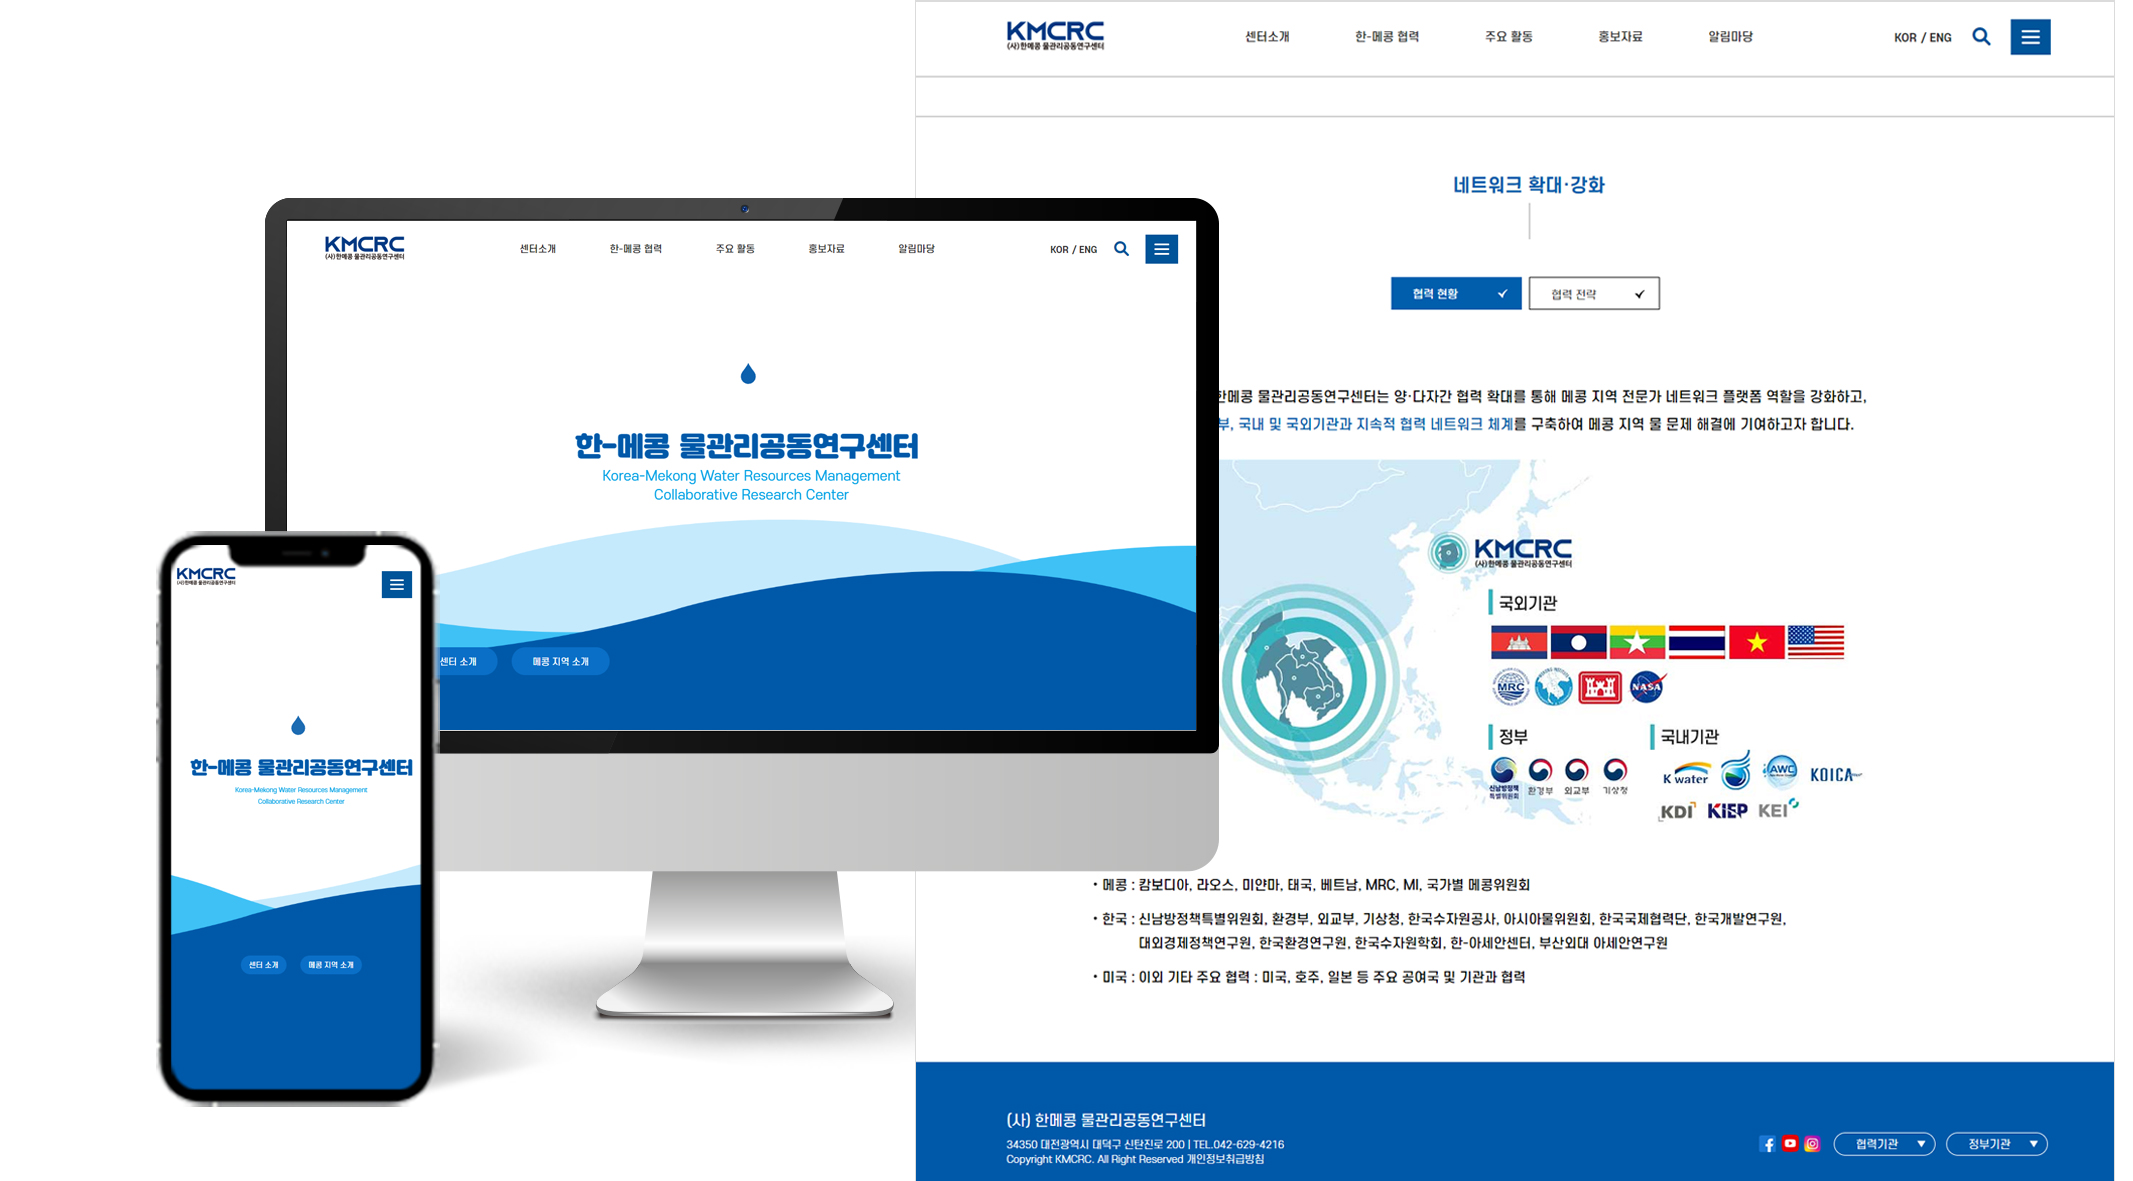 한-메콩 물관리공동연구센터 홈페이지 개발